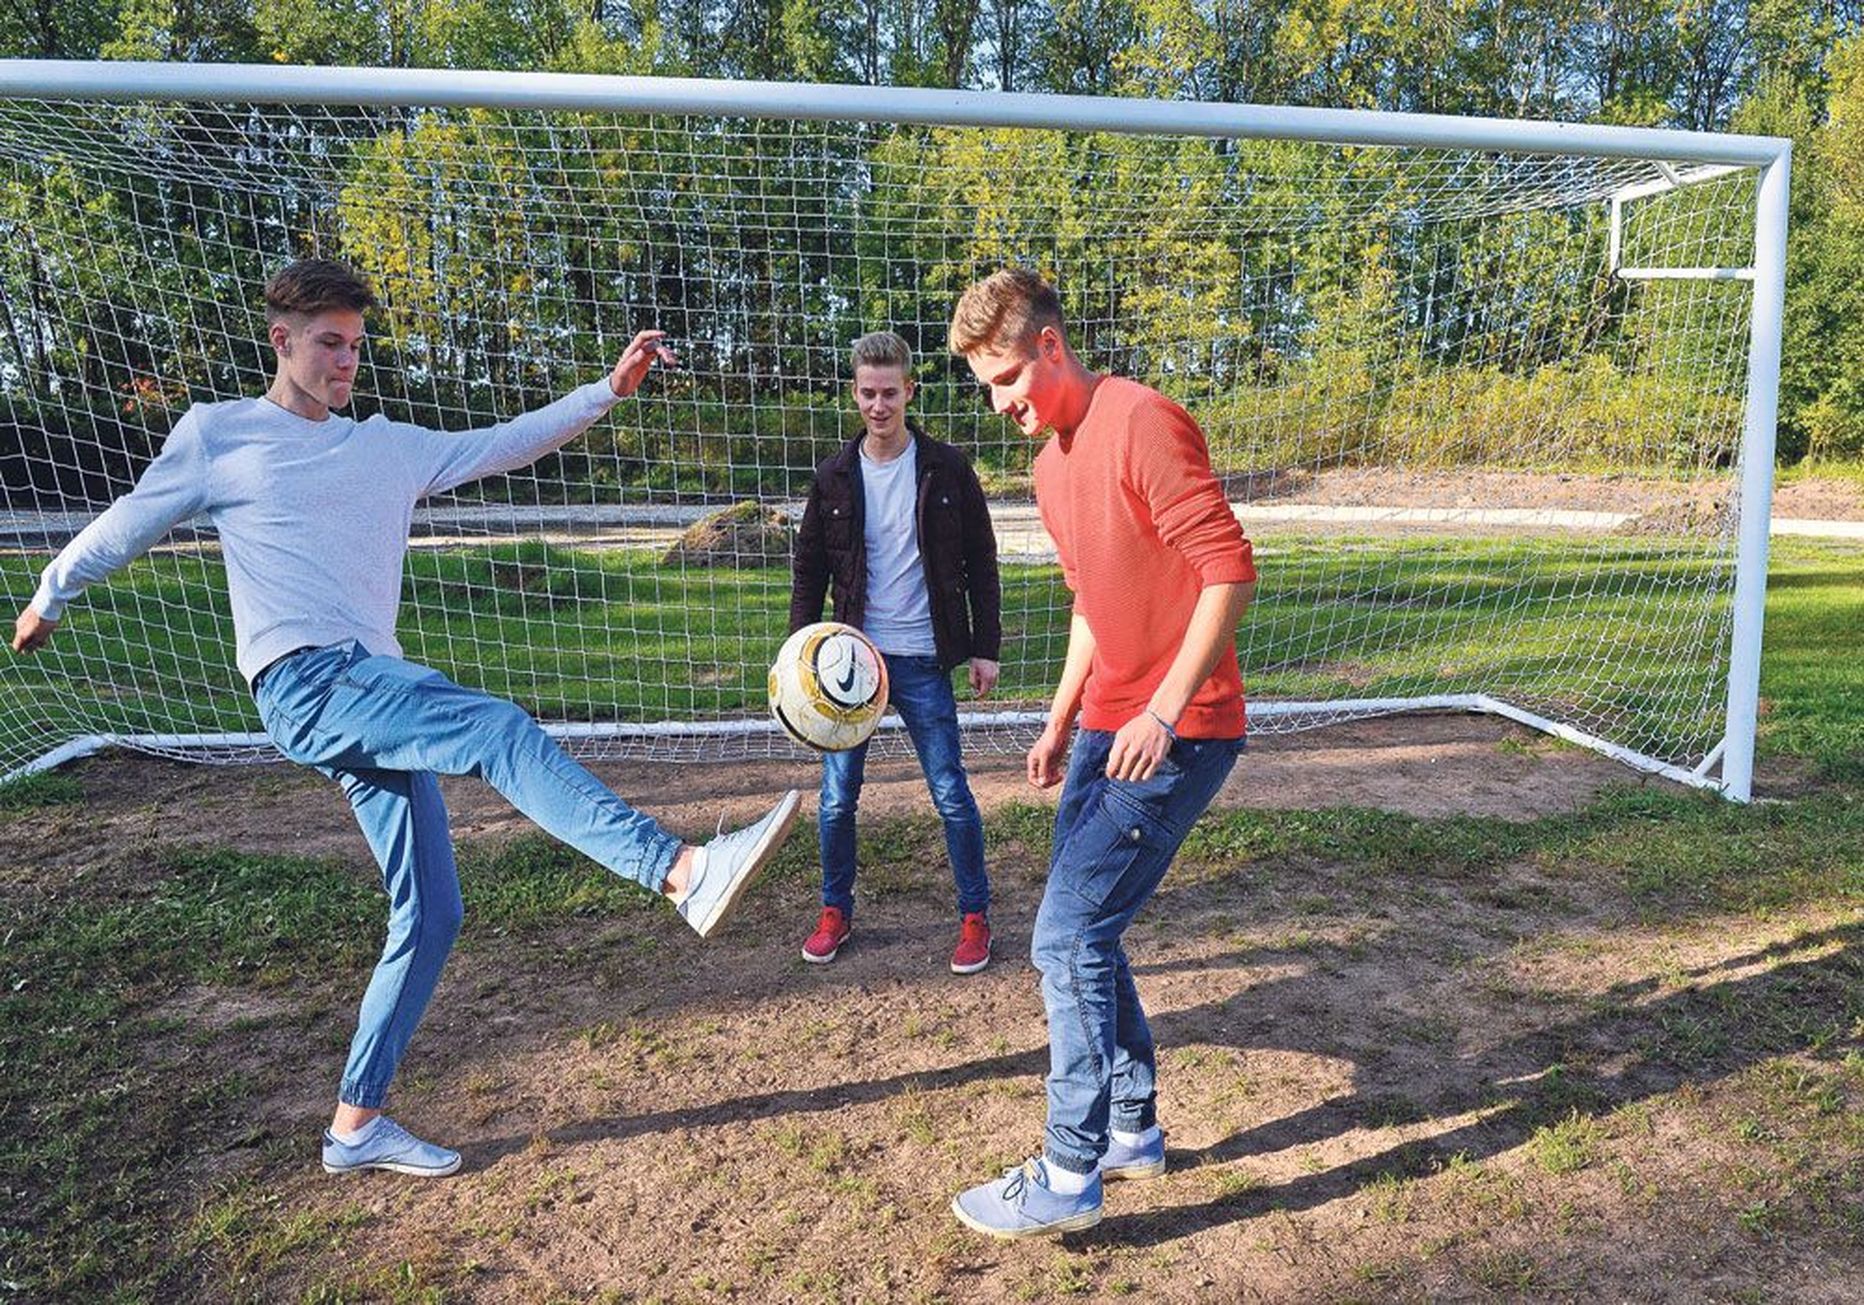 Nõo reaalgümnaasiumi 11. klassi poisid Toomas Pruul (vasakult), Robert Joonas ja Tarvo Timm leiavad, et staadionil on nüüd tänu uutele väravatele palju parem vutti mängida.